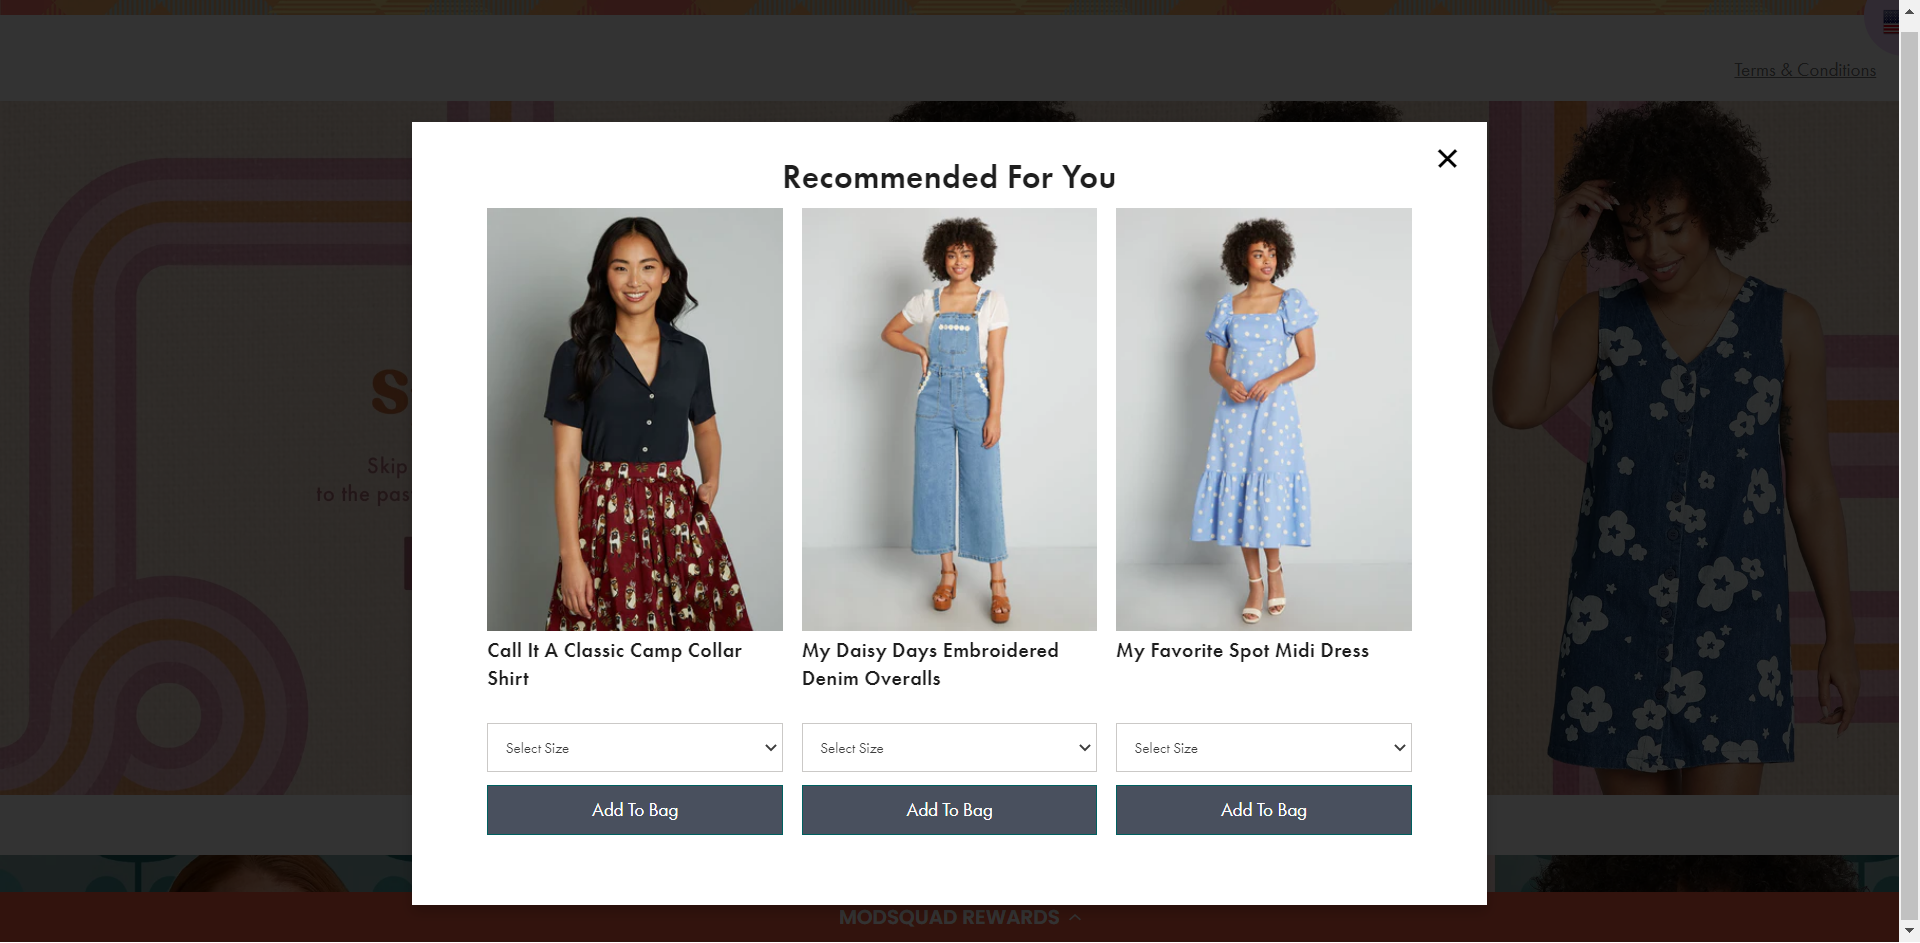 Tácticas de personalización de comercio electrónico: una captura de pantalla del sitio web de ModCloth. Muestra una ventana emergente con 3 productos "Recomendados para ti".